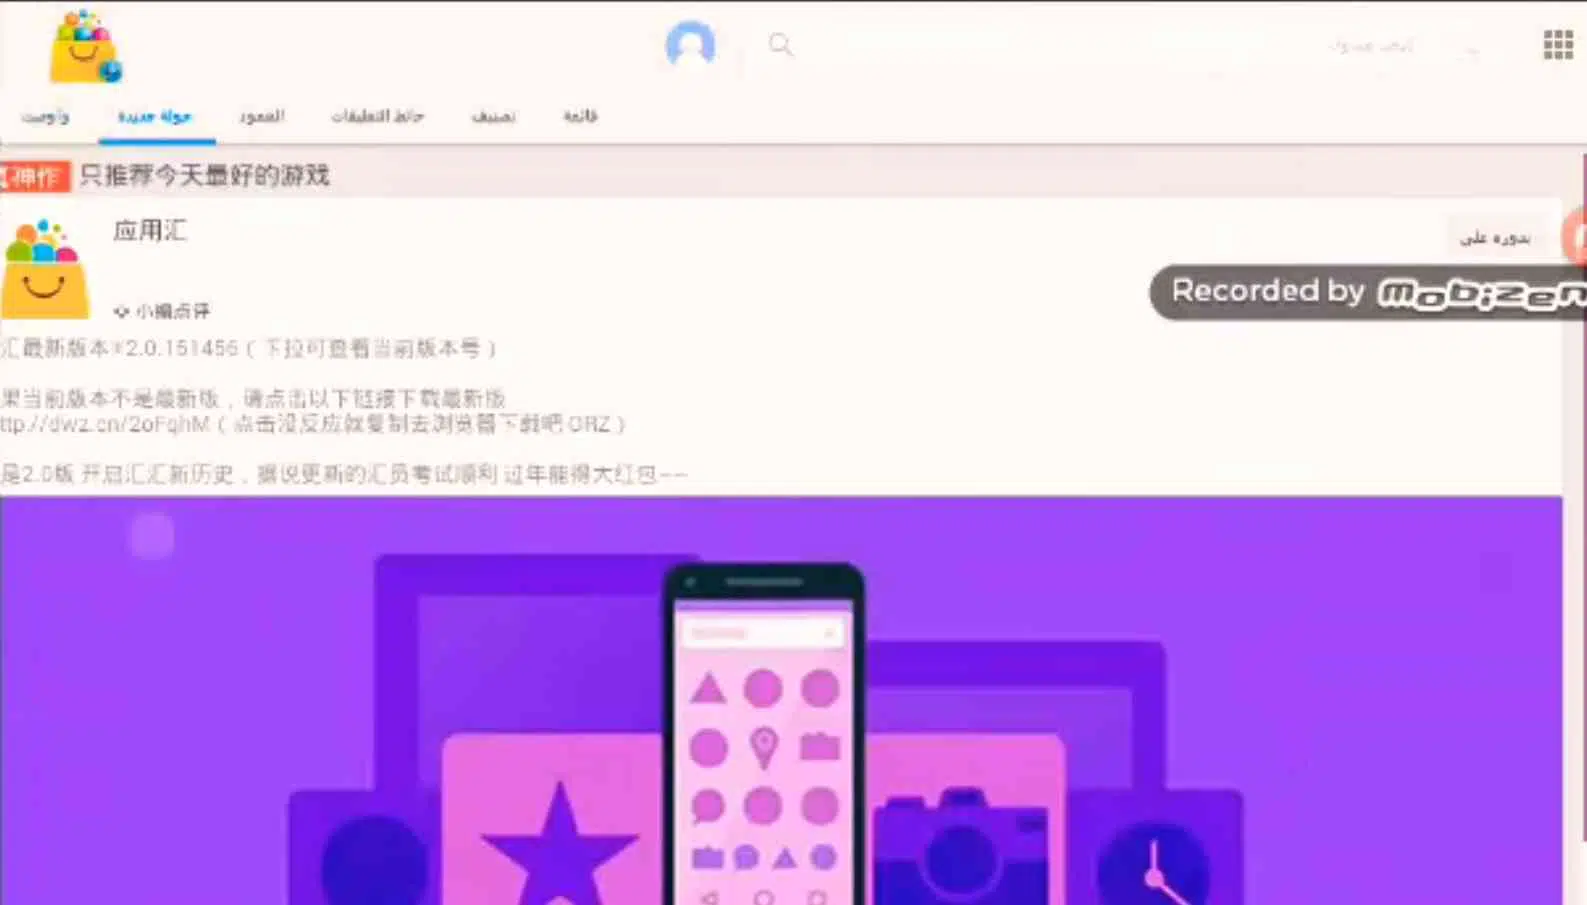 تحميل المتجر الصيني معرب app china للاندرويد مجانا 2022 apk 2